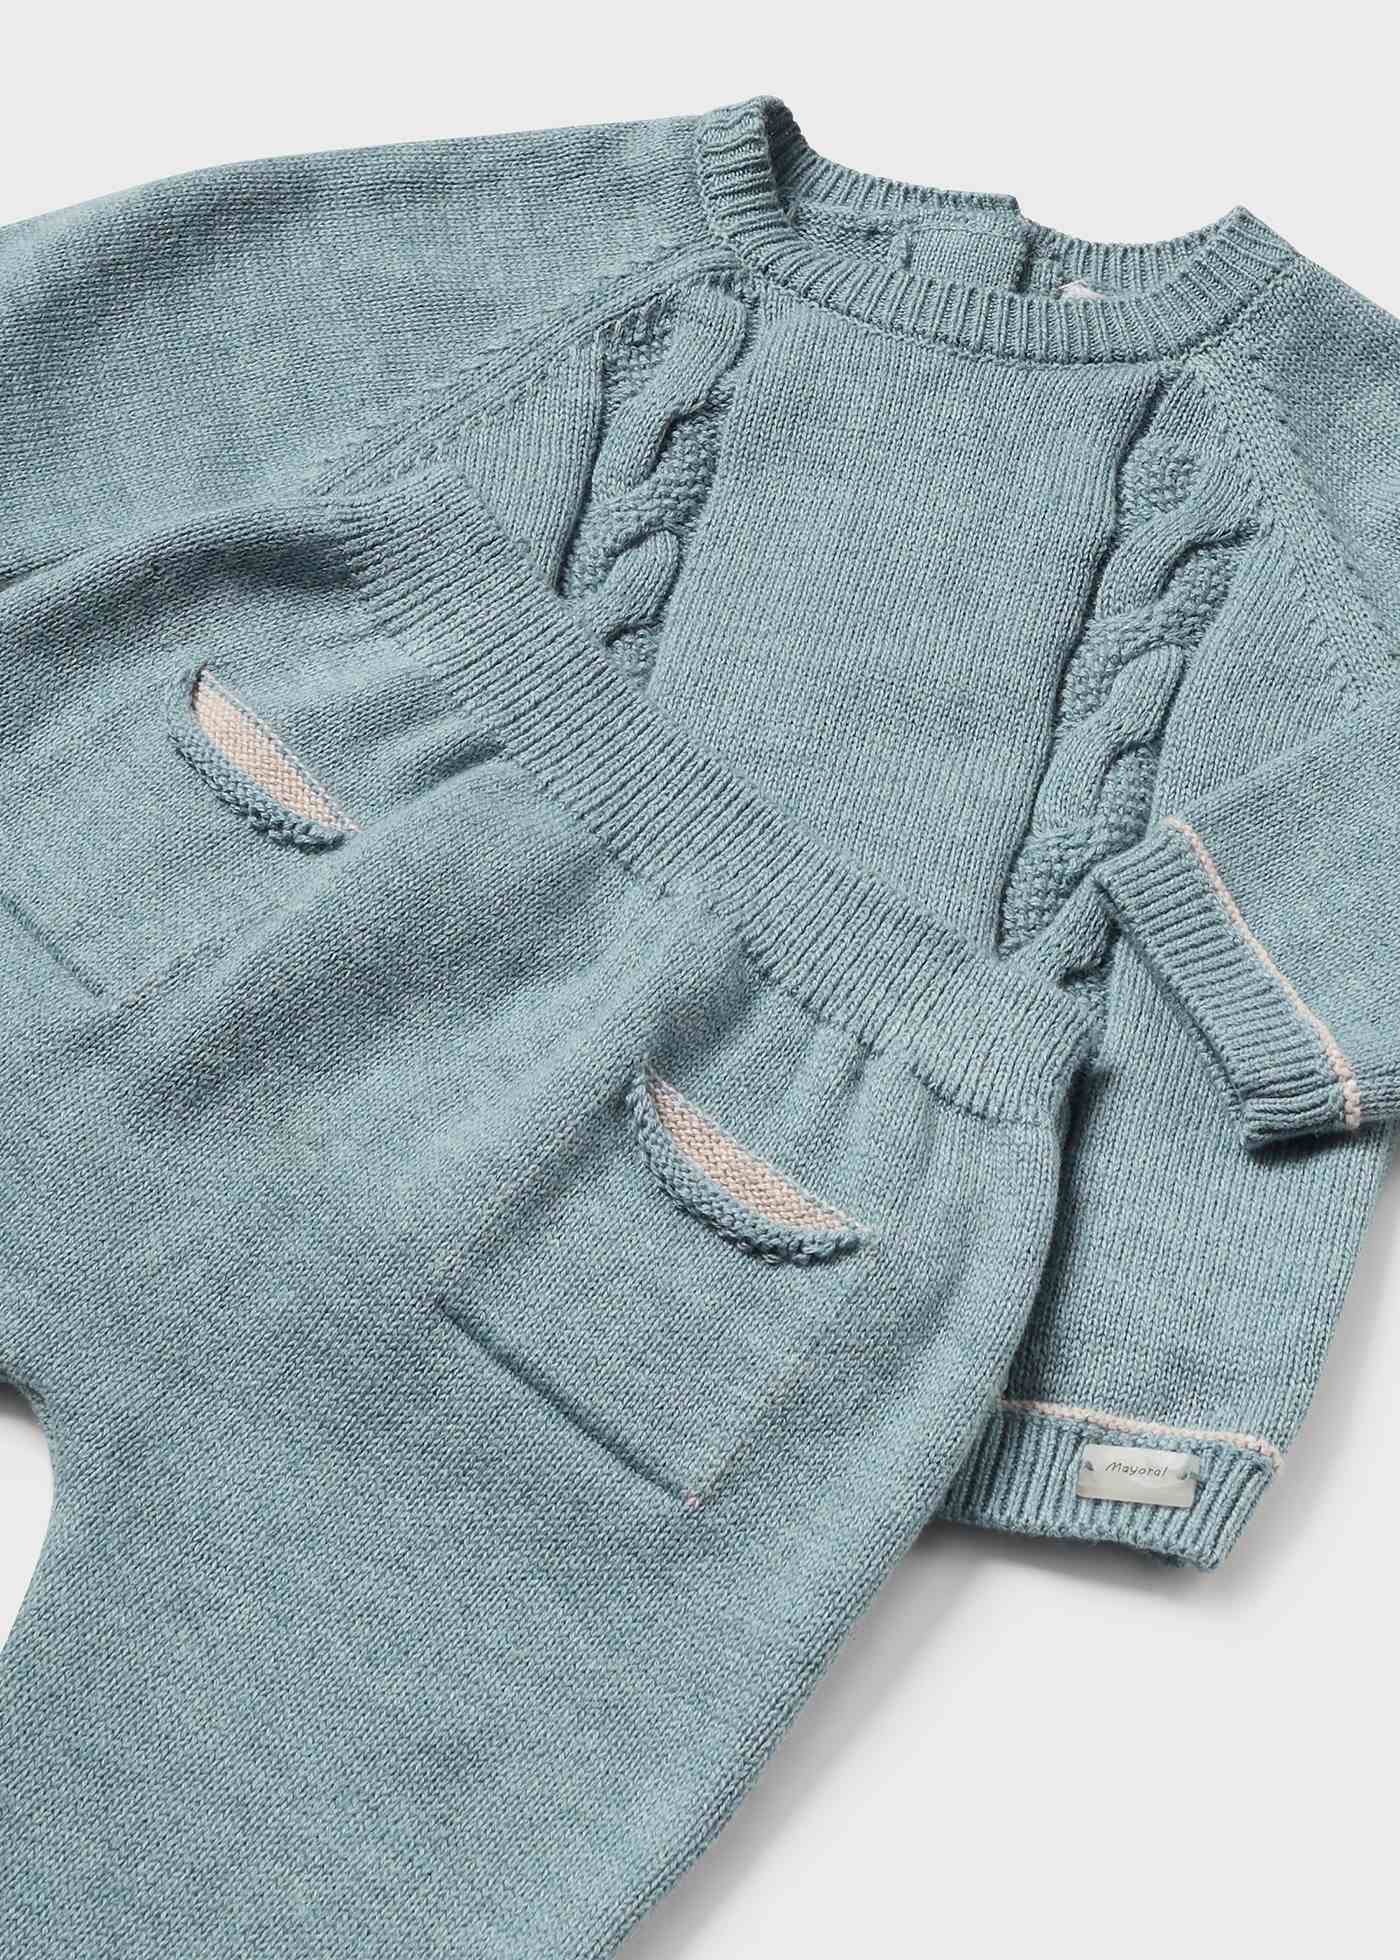 3-piece knitted set newborn baby boy